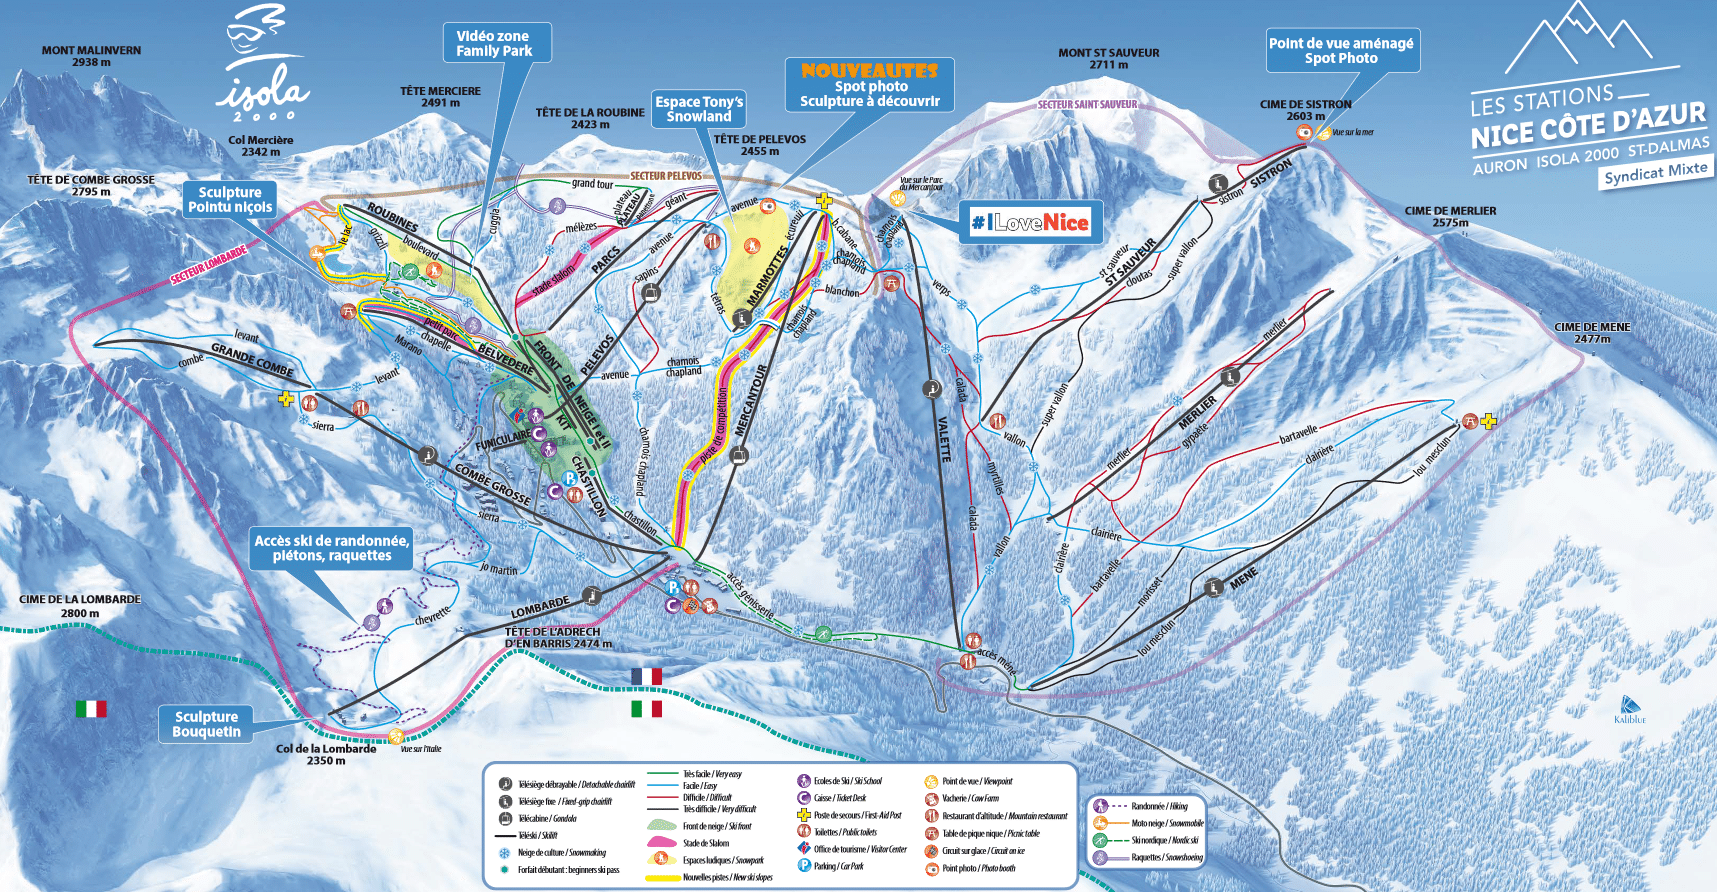 Isola 2000 - Ski slope map